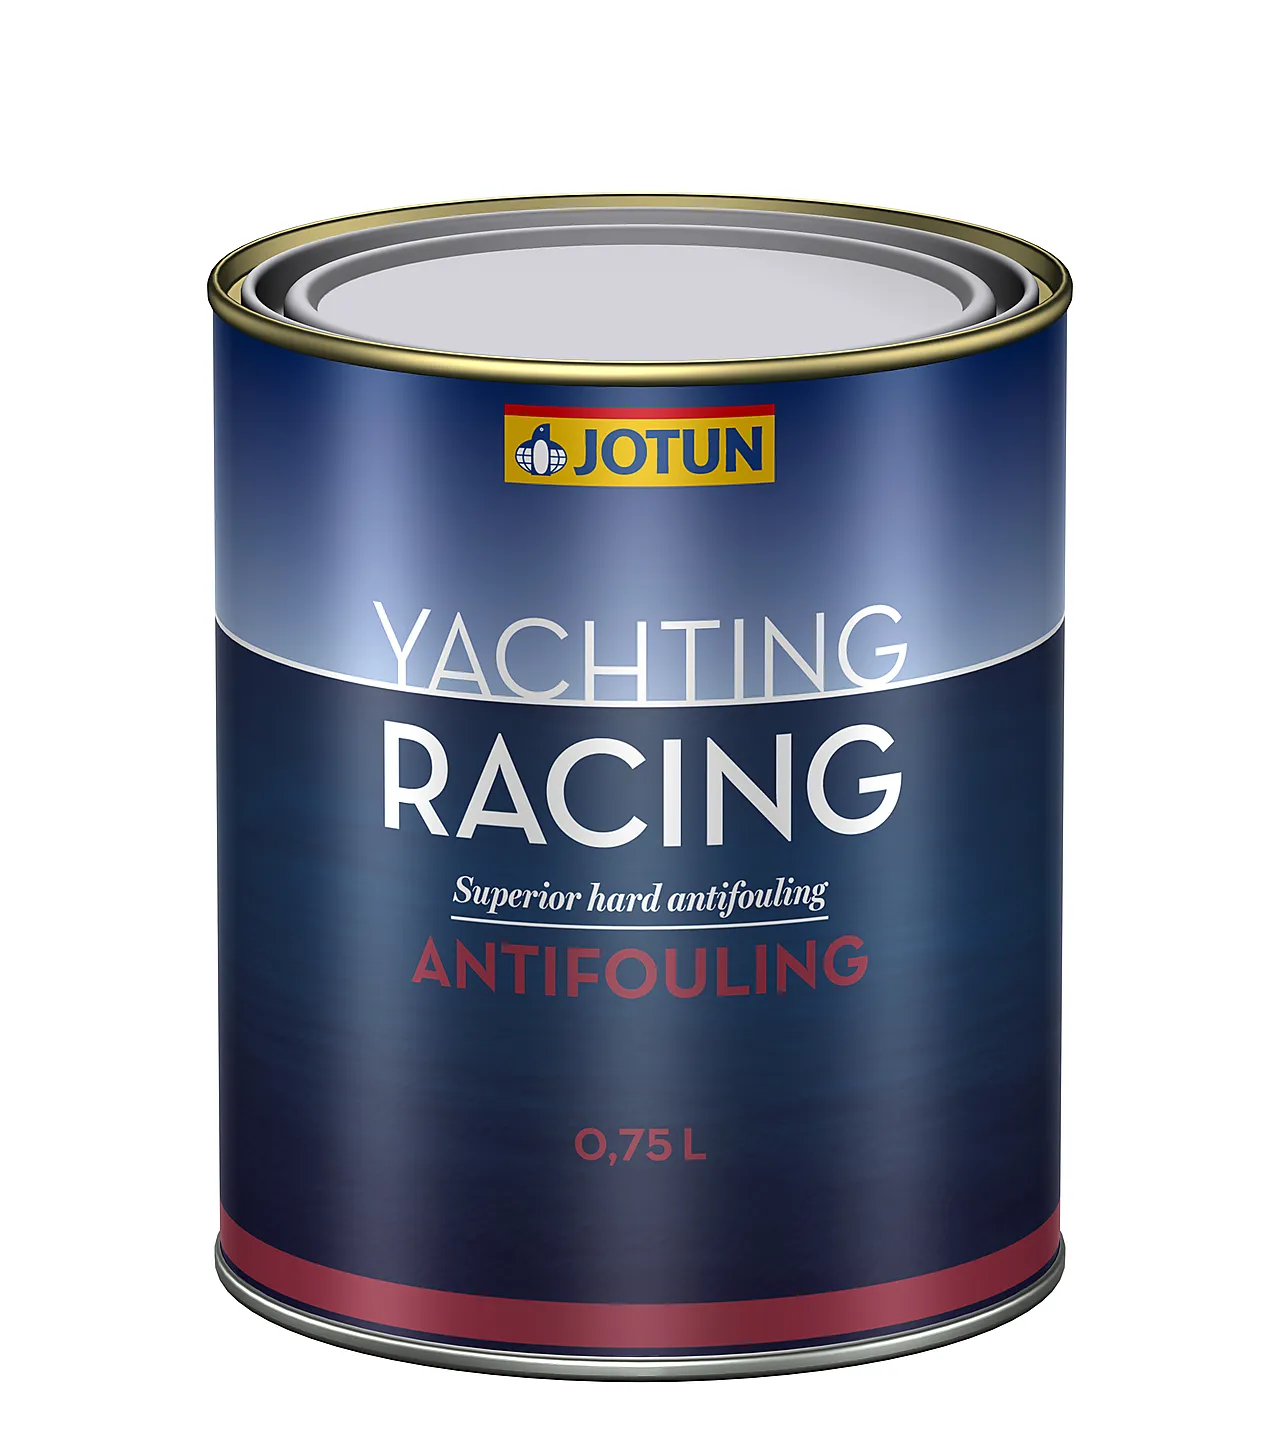 Racing grey              0.75ljotun